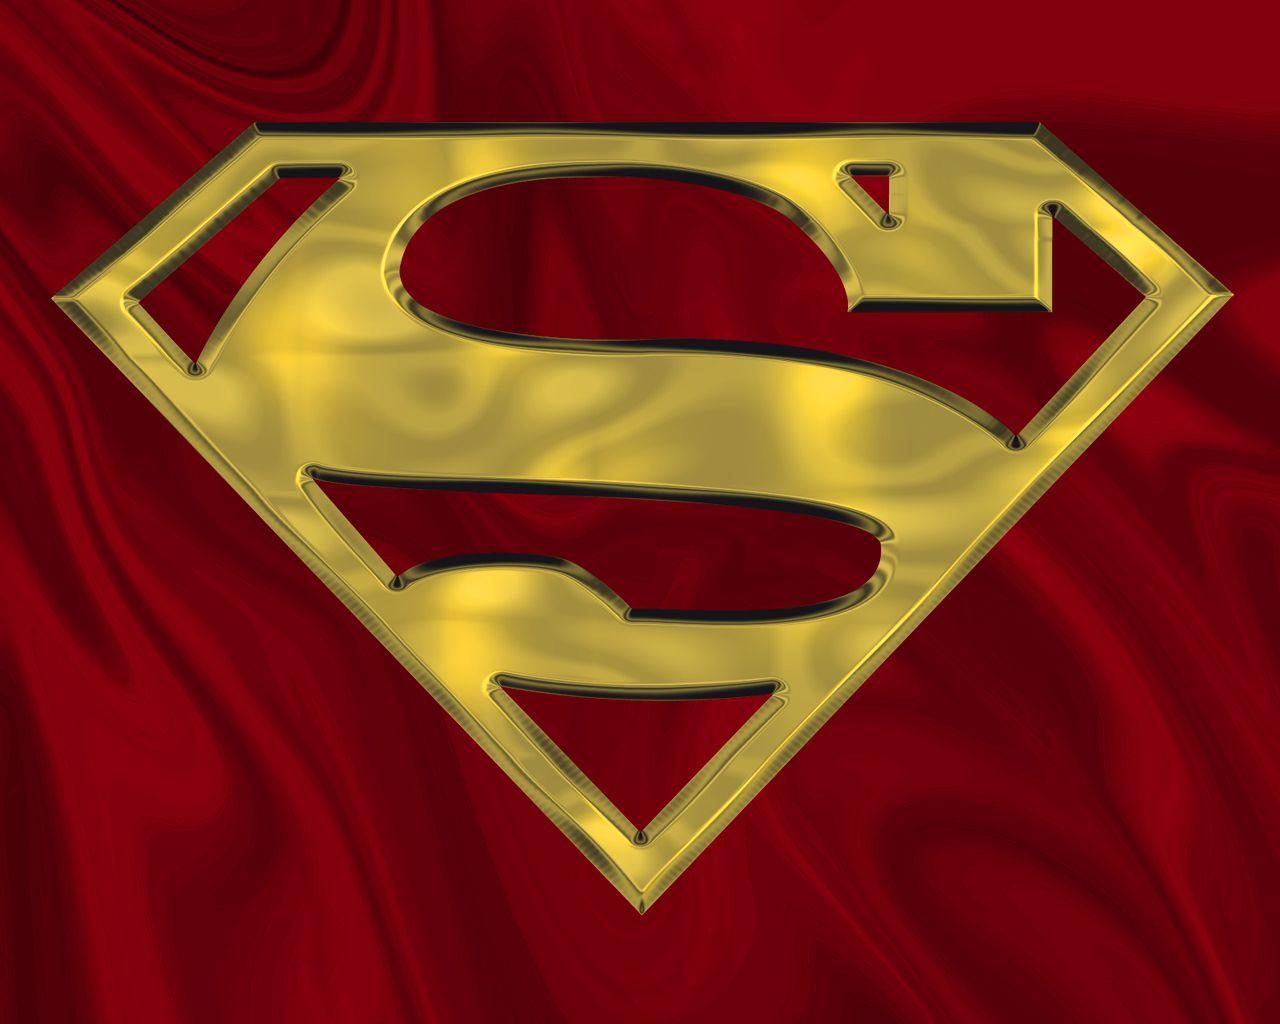 Gold Superman Logo - Superman Gold on Red by zephyrmourne.deviantart.com on @deviantART ...